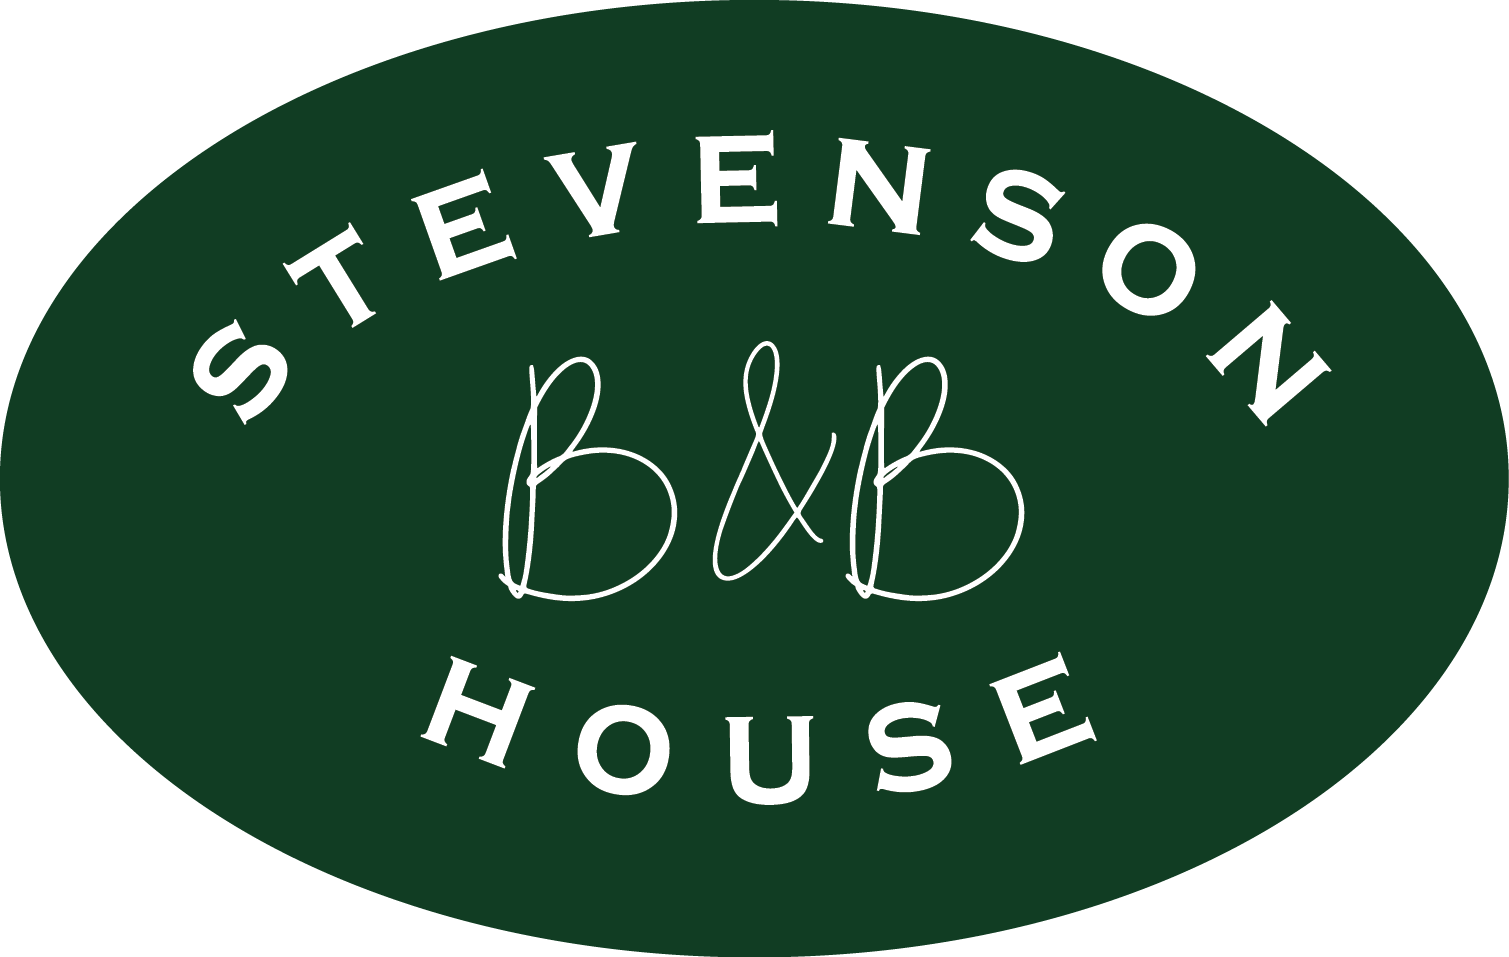 Stevenson House Bed &Breakfast